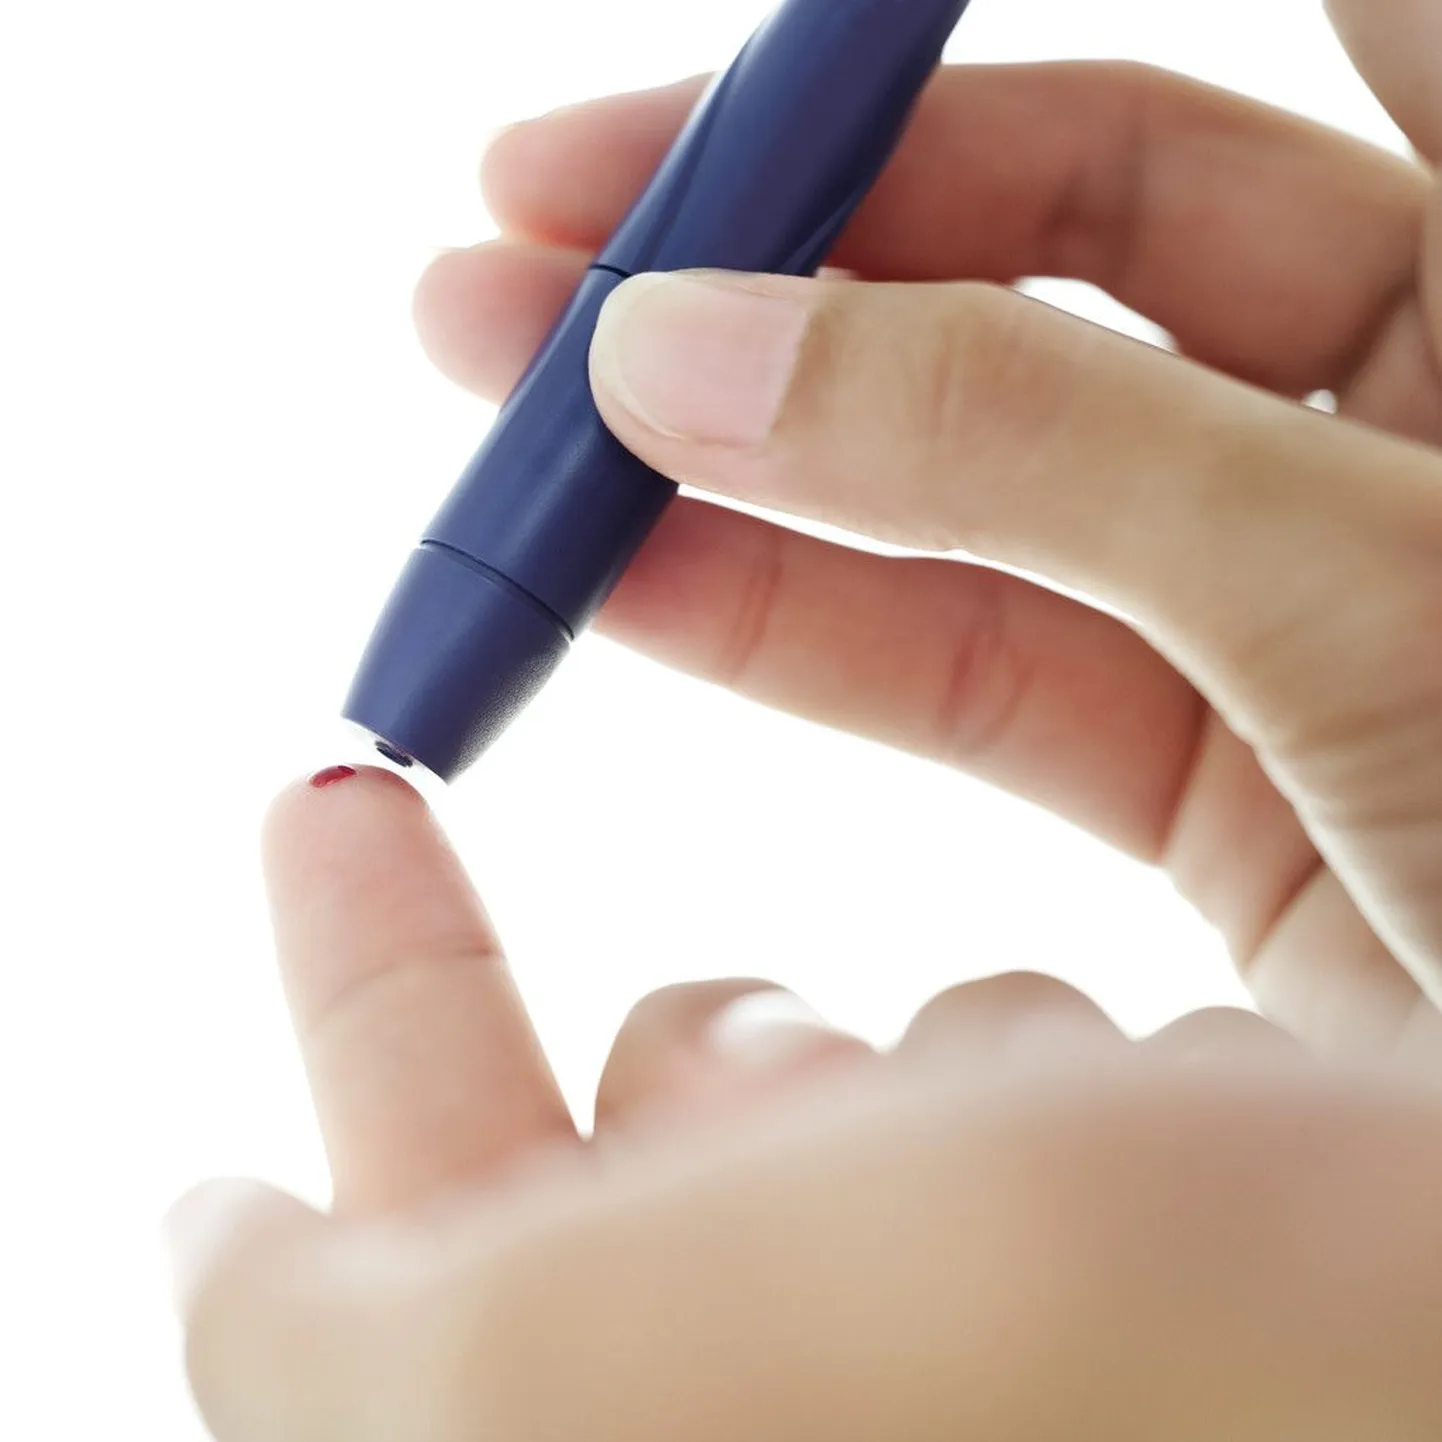 Регулярный контроль уровня сахара в крови помогает снизить риск развития осложнений при диабете.